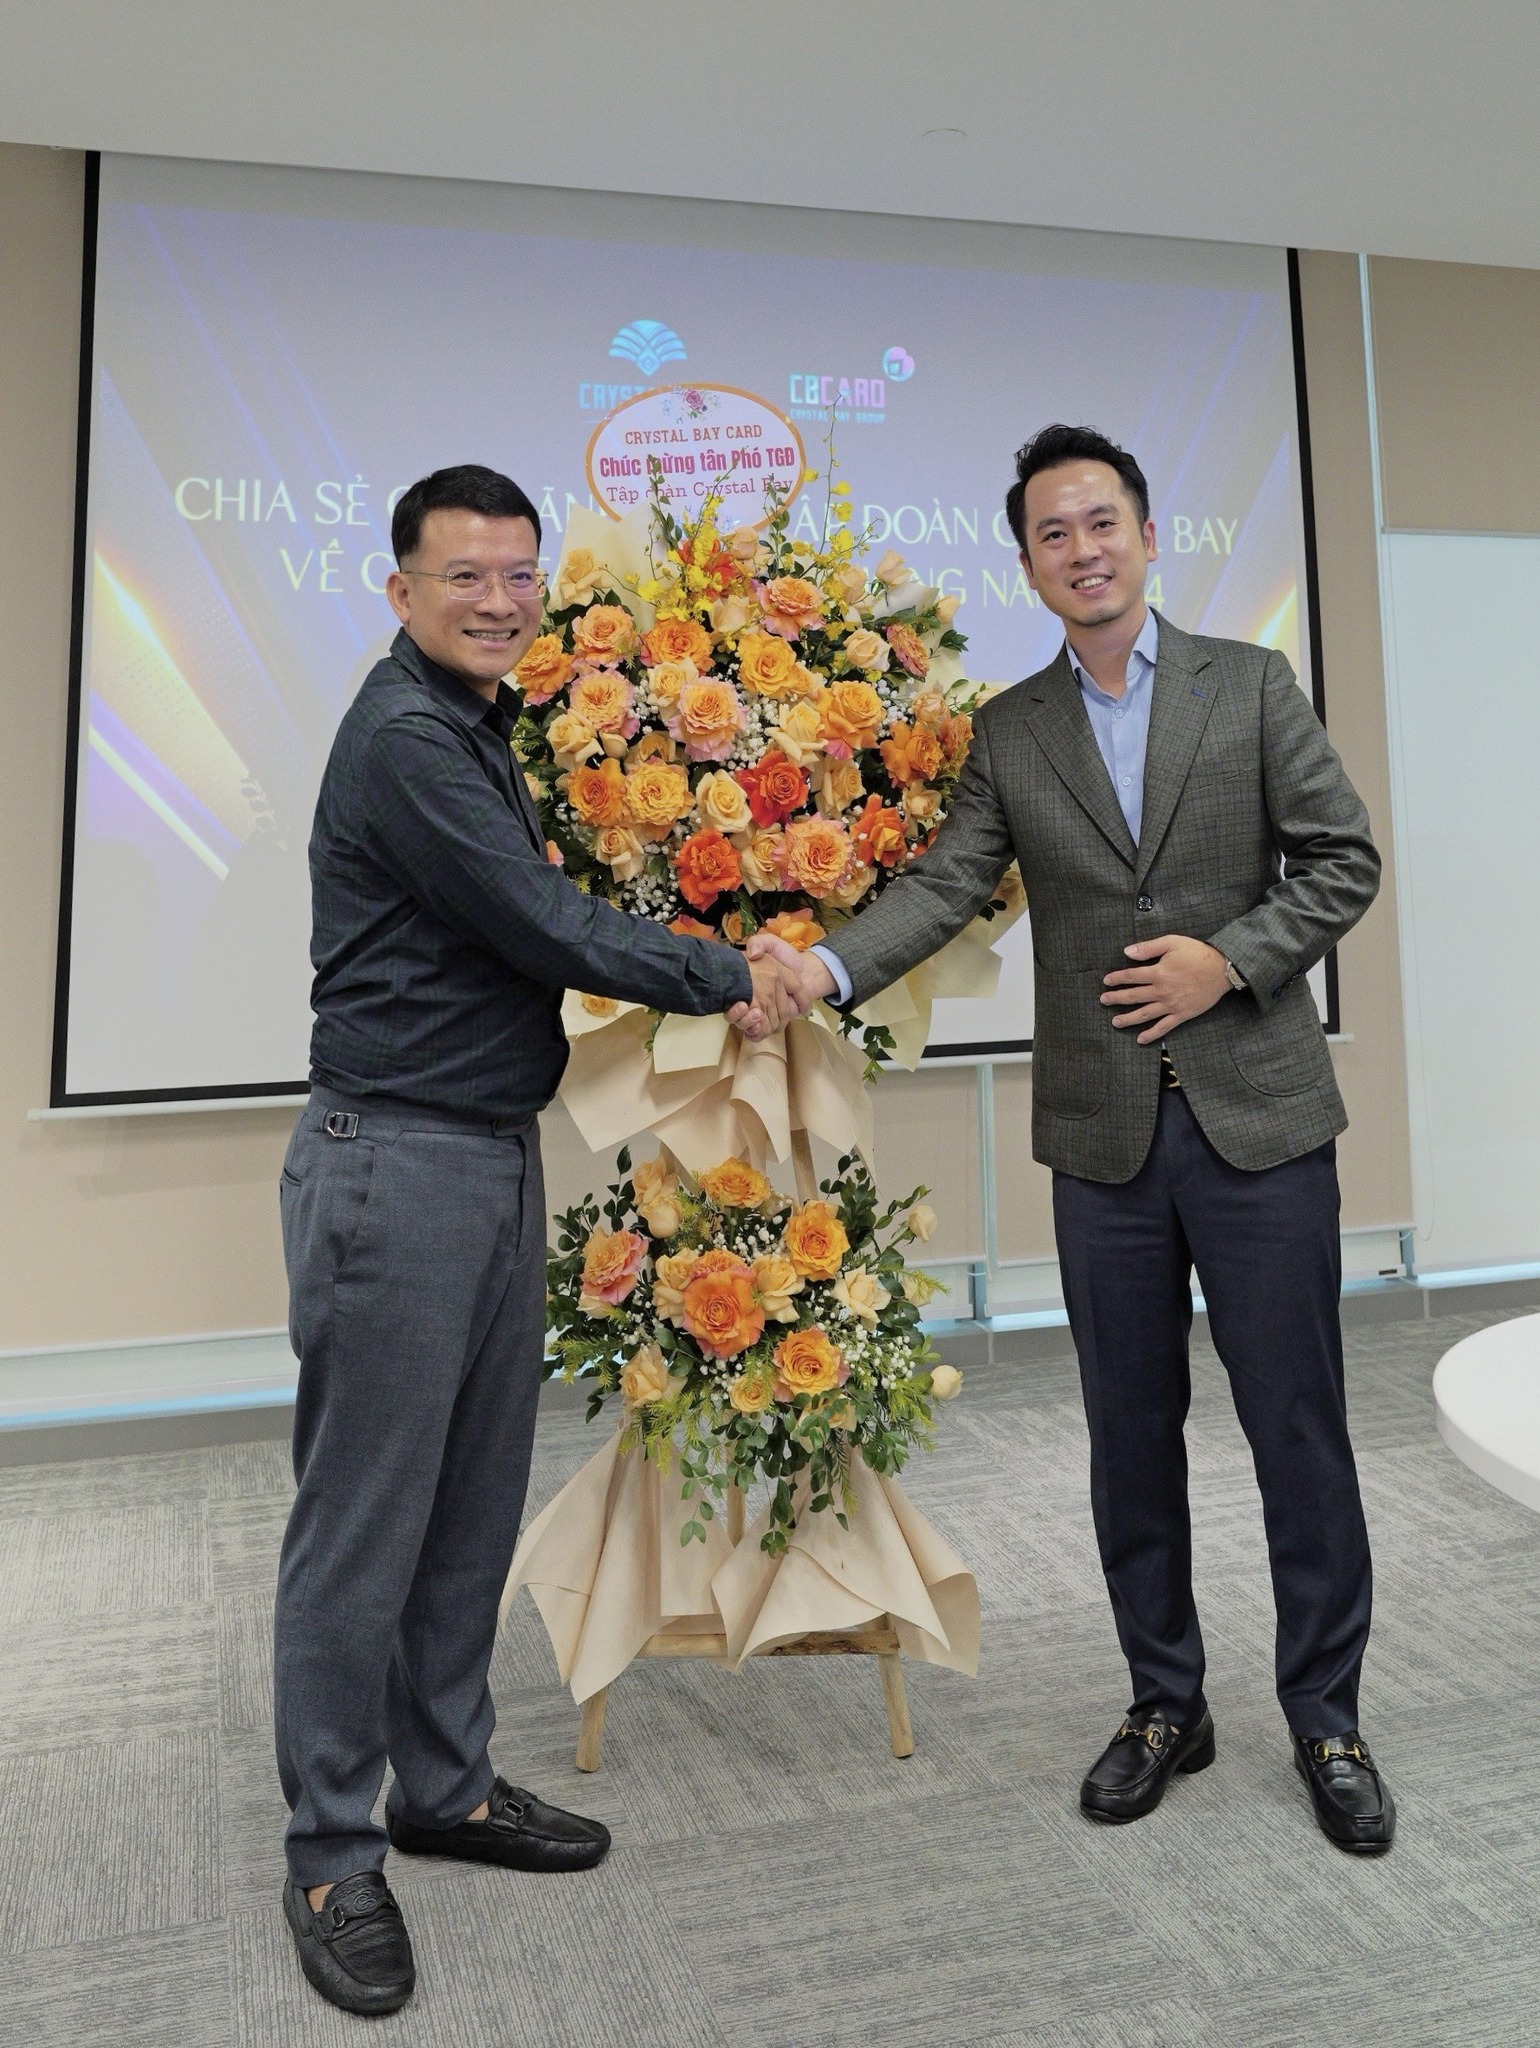 Ông Dzung Tran, Phó Tổng giám đốc Crystal Bay Group (trái) và ông Đỗ Nguyễn Thành Công, TGĐ Crystal Bay Card trong một sự kiện tại Hà Nội.